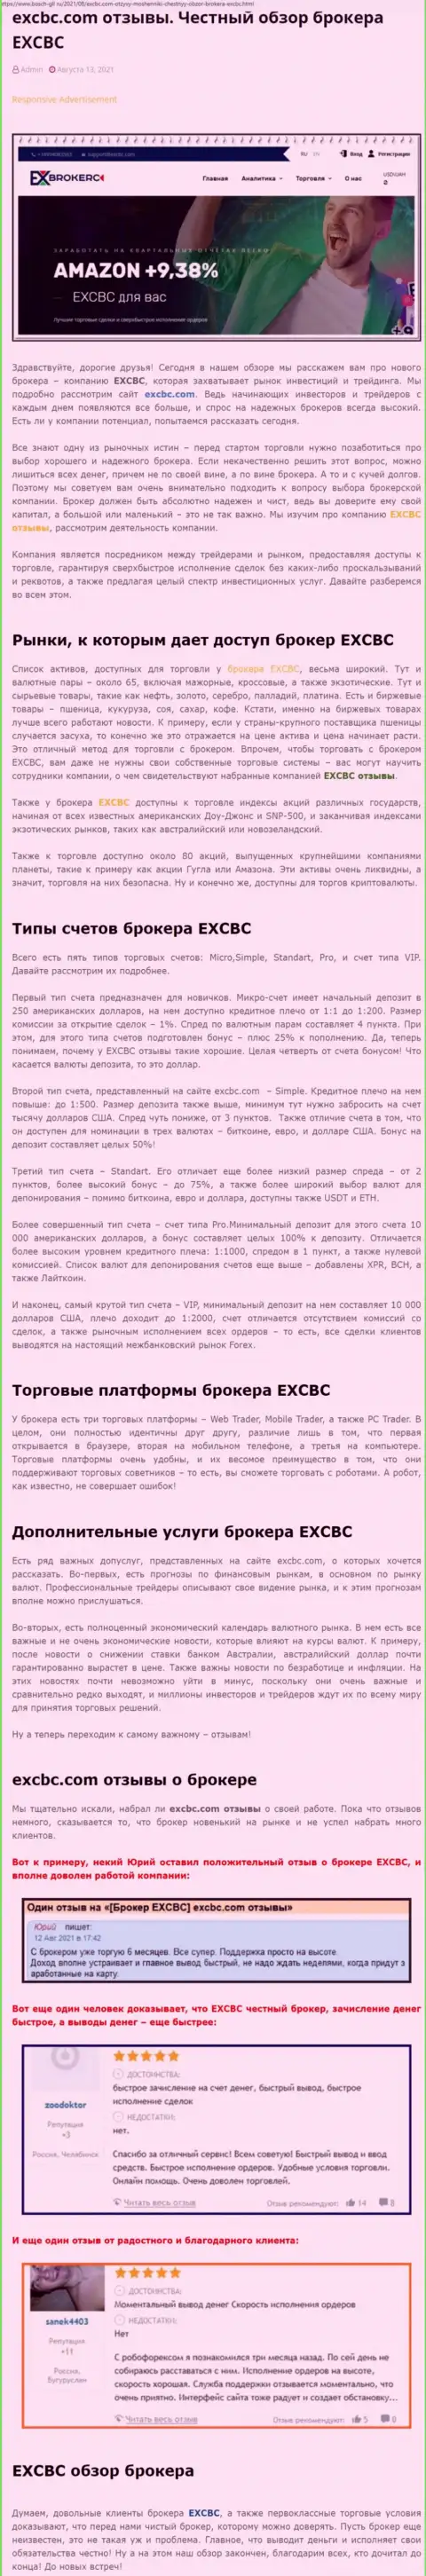 Честный обзор деятельности Forex брокерской компании ЕИксКБК Ком на ресурсе Бош-Гил Ру